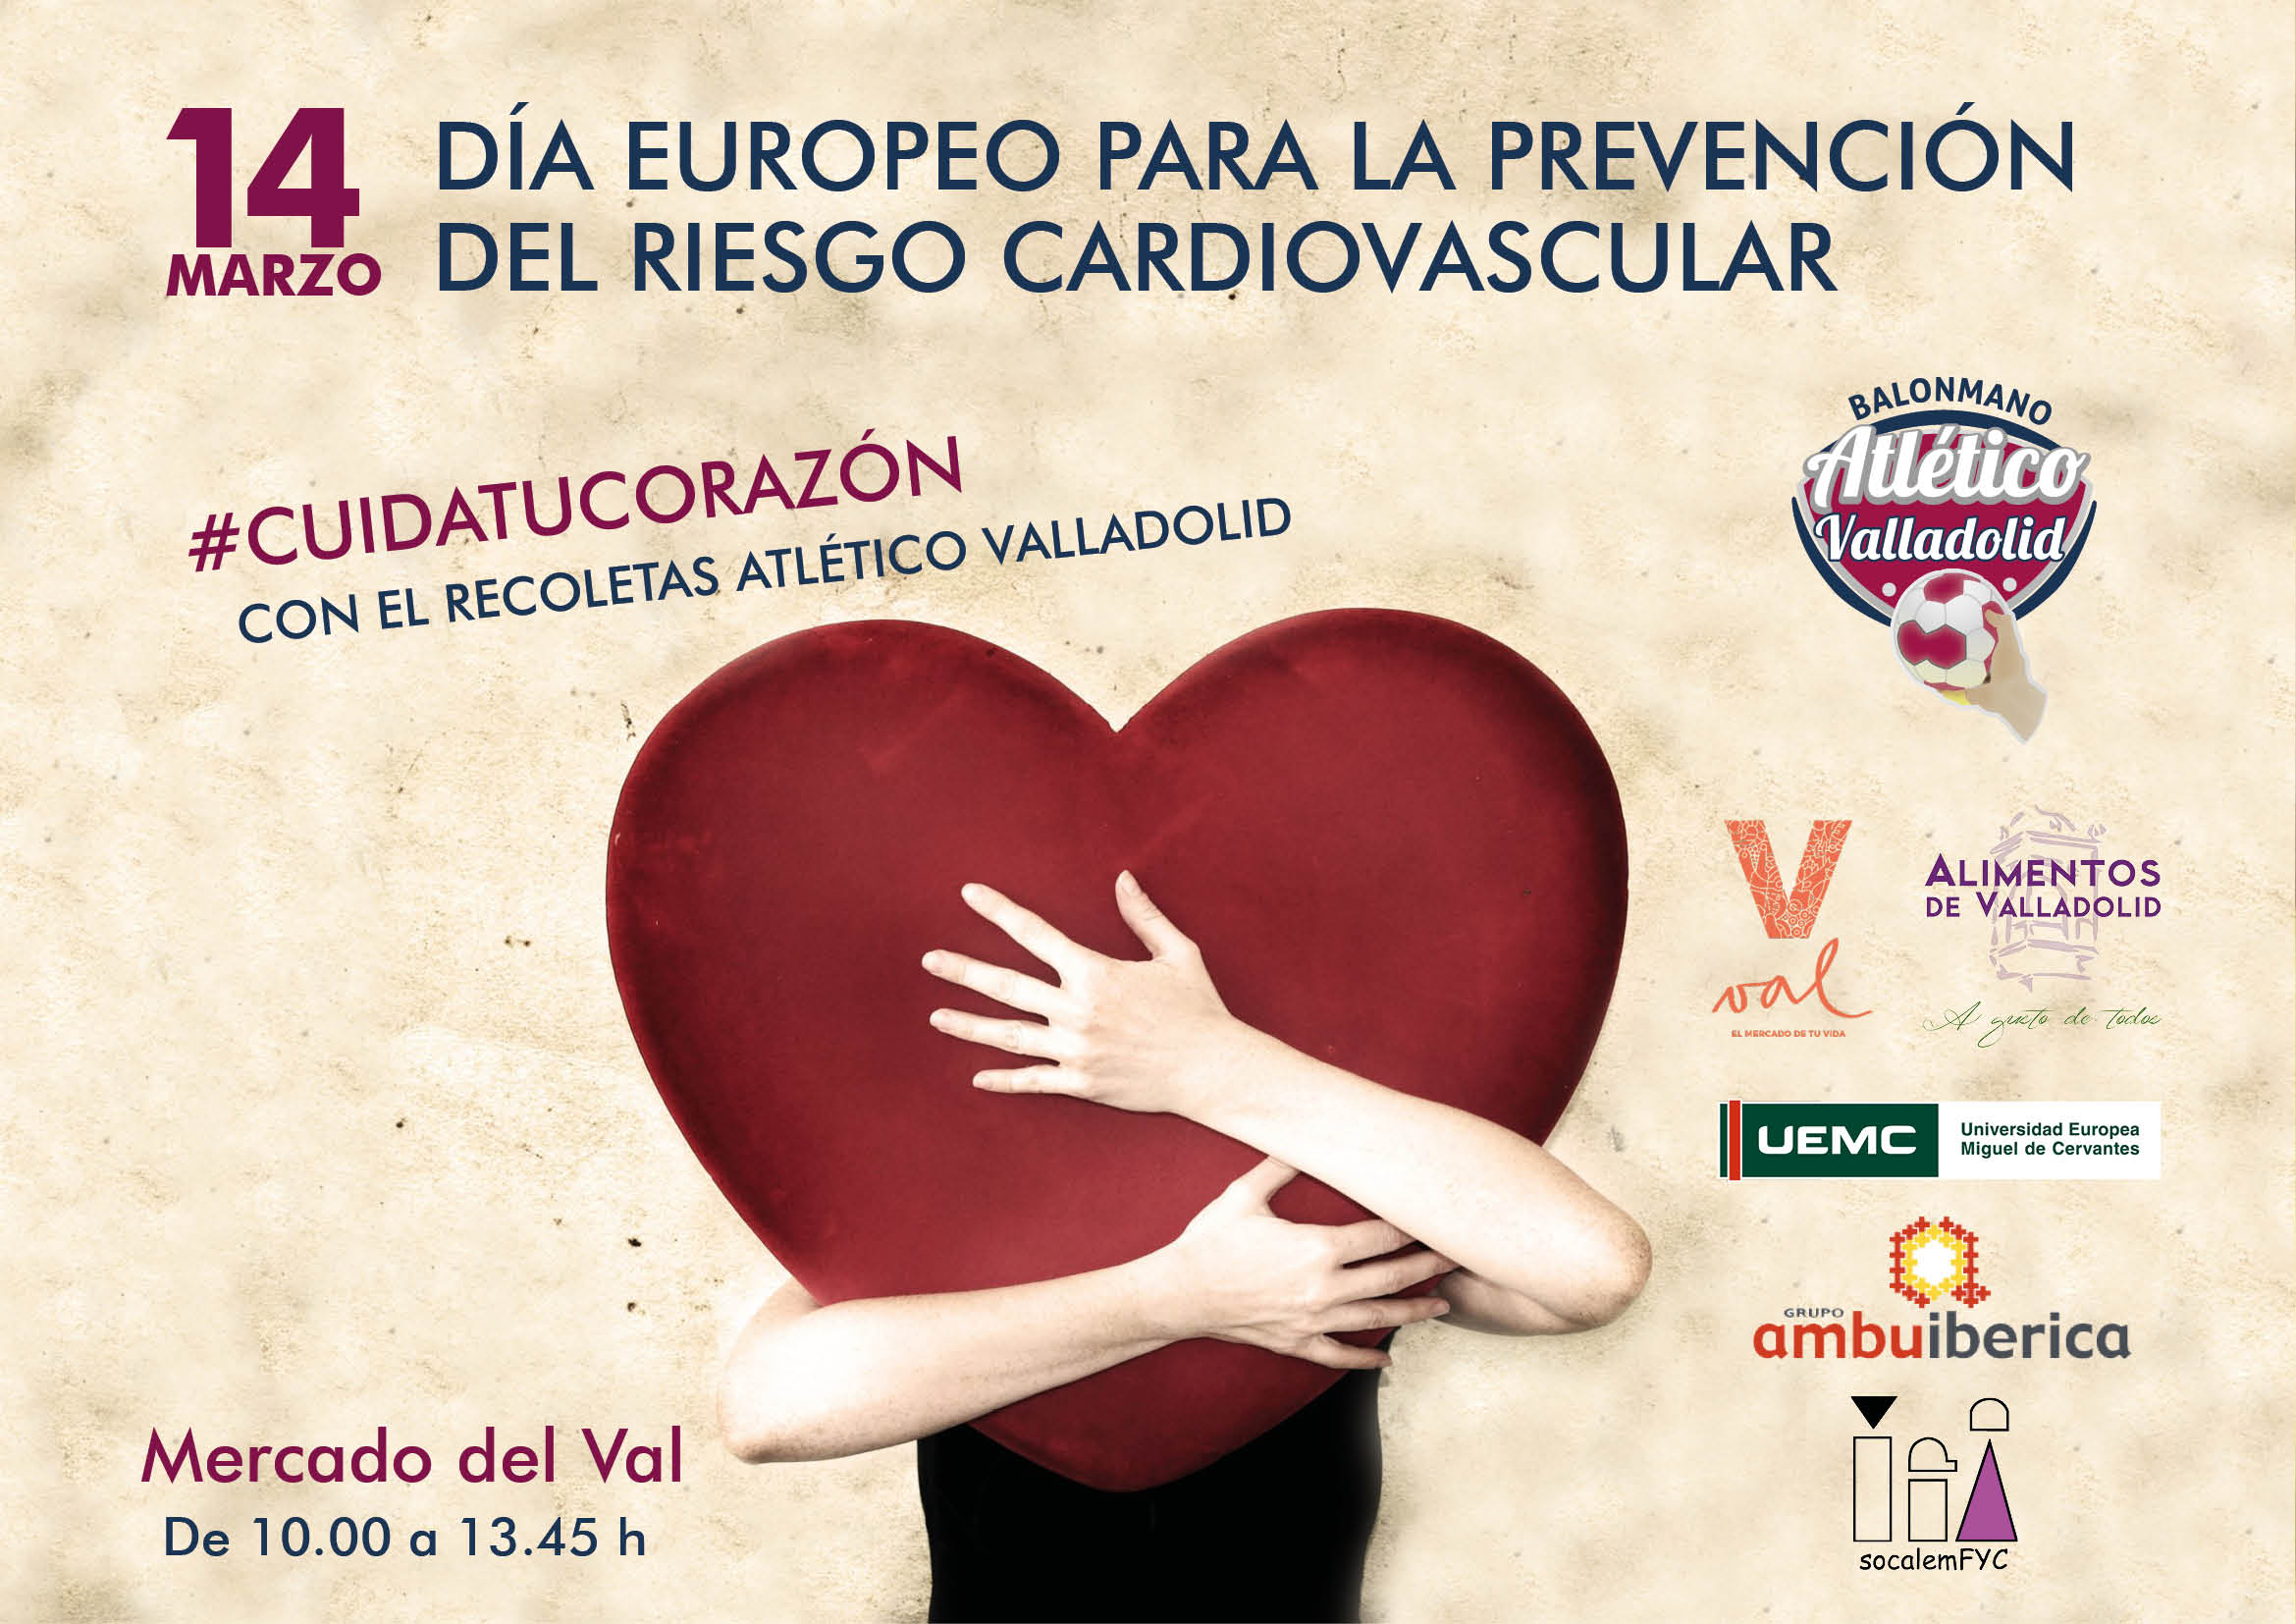 El Recoletas Atlético Valladolid quiere ayudar a concienciar en la prevención del riesgo cardiovascular